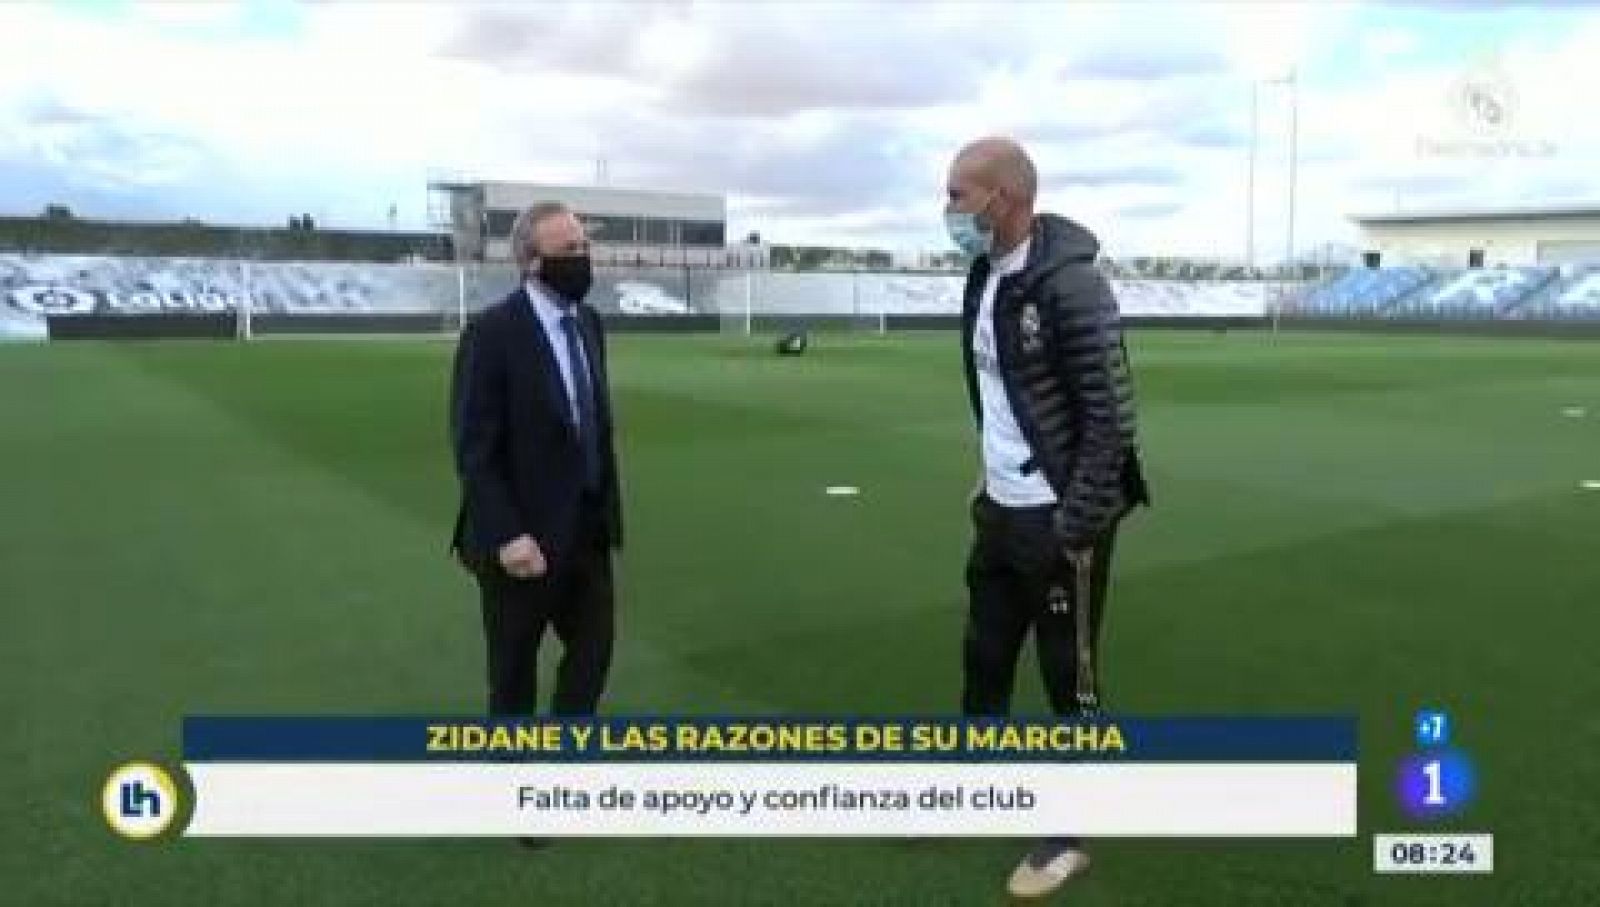 Zidane: "El club no me da la confianza que necesito"